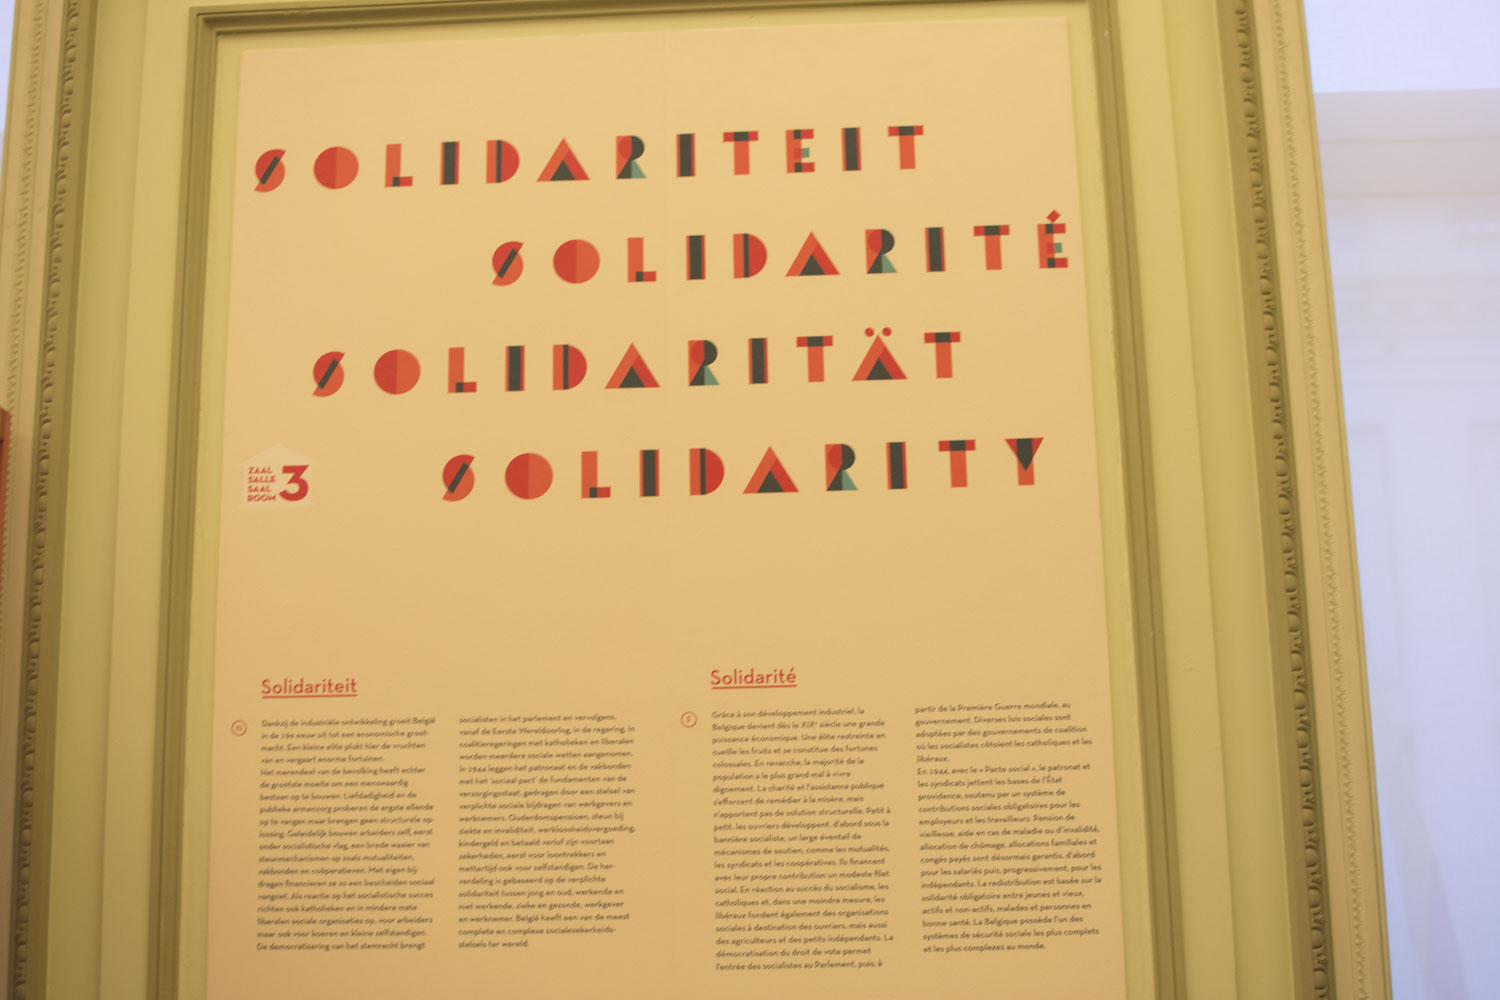 Dans la salle « Solidarité », on trouve les affiches des premiers syndicats par exemple. C’est l’essor de la sécurité sociale et des aides de l’État pour les populations en difficulté